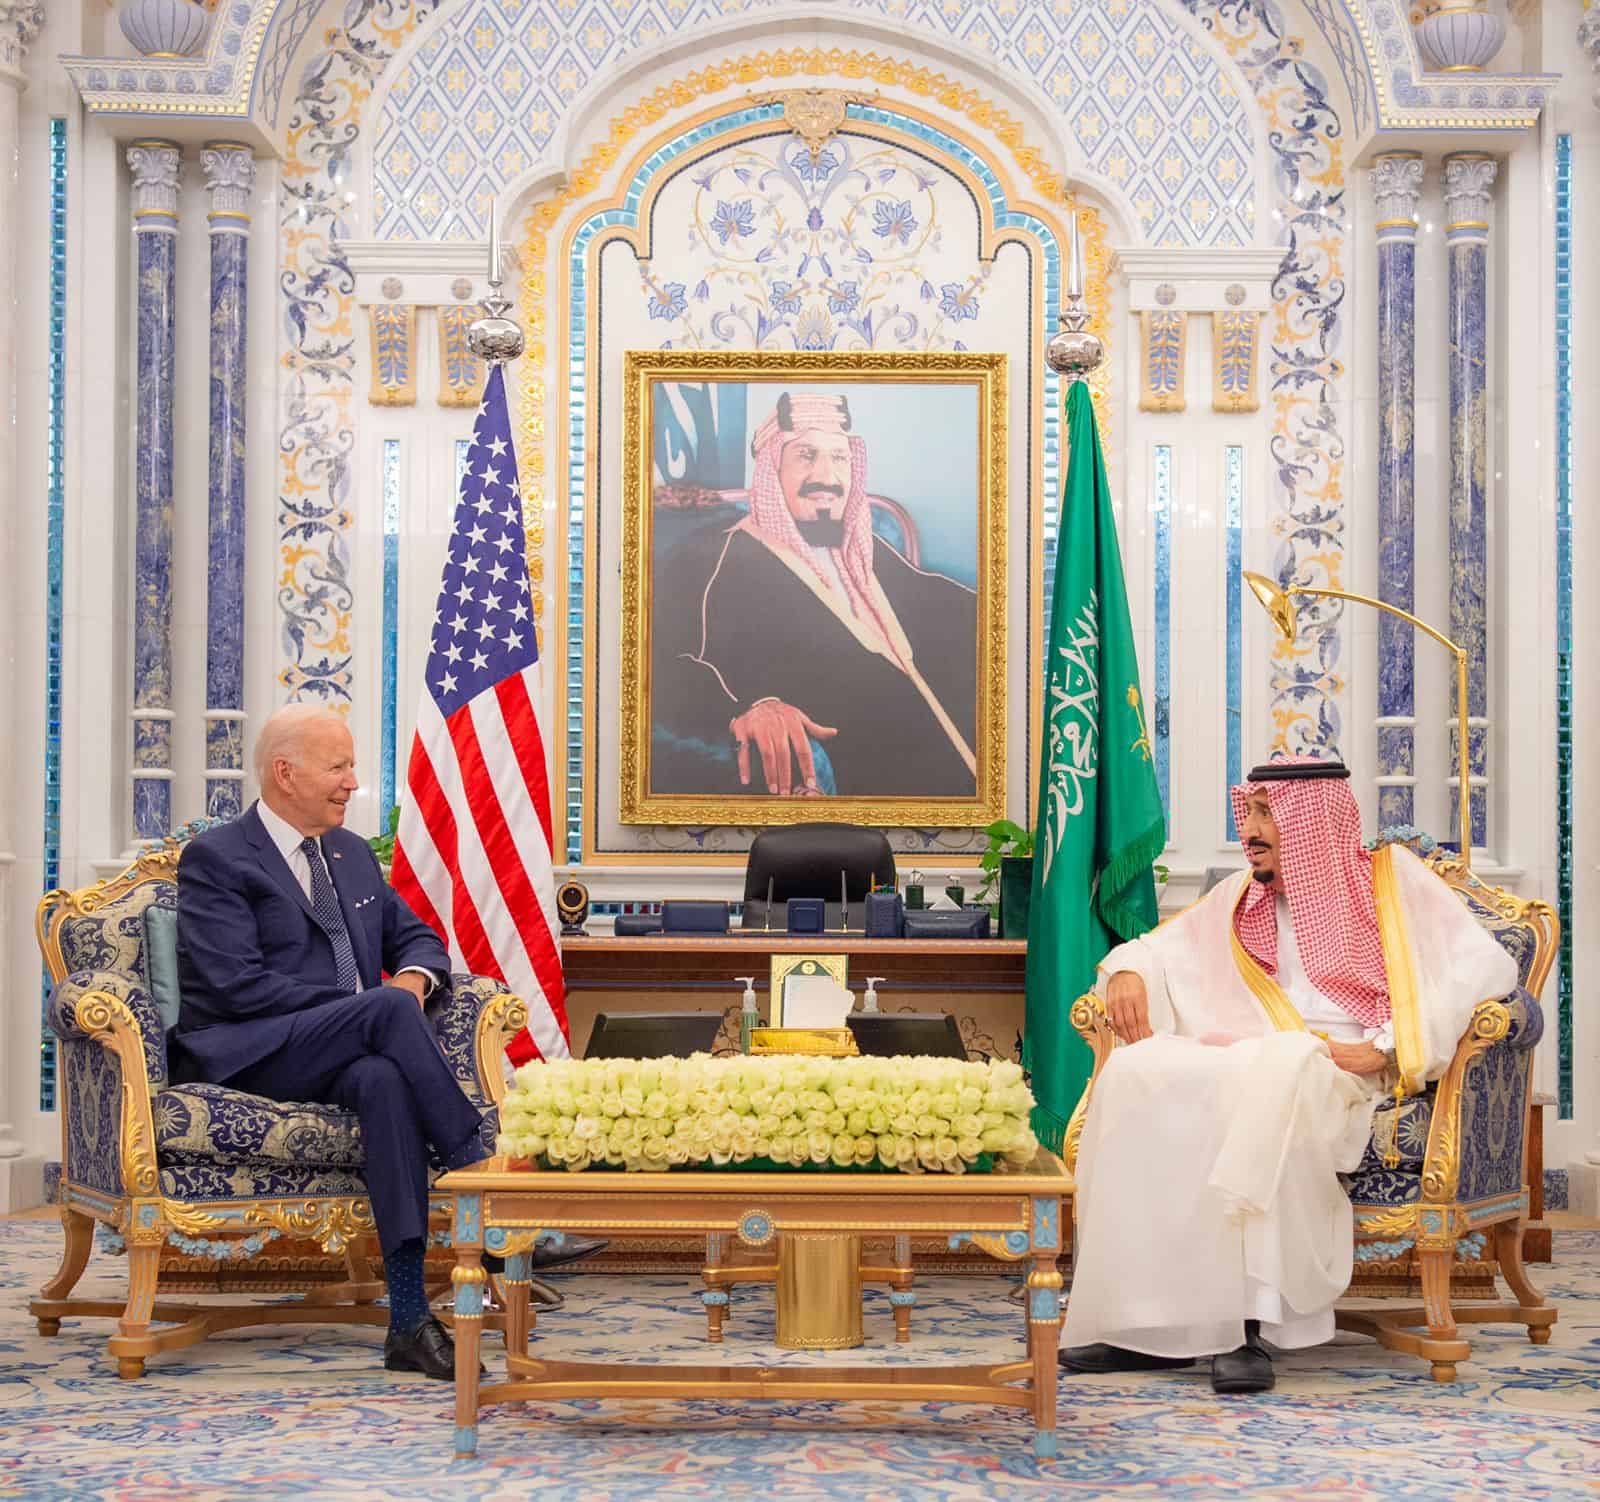 Biden thanks the Saudi King and Mohammed bin Salman for extending armistice in Yemen